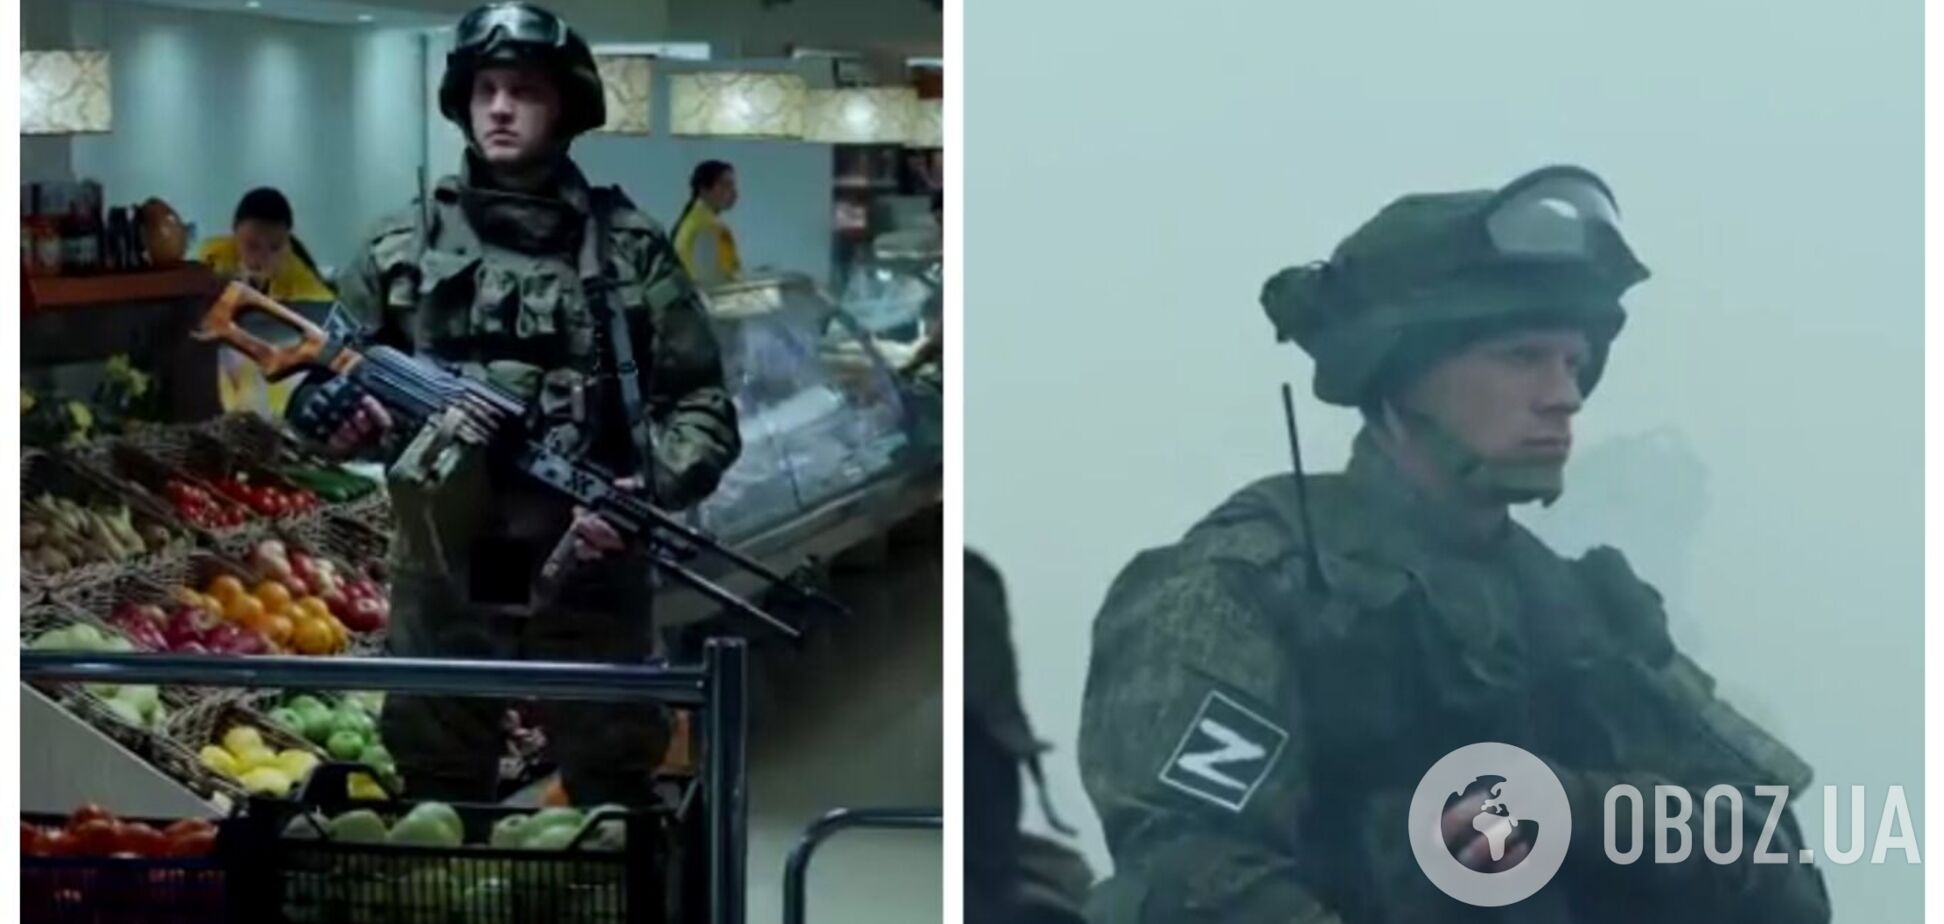 'Ти ж мужик': у Росії запустили пропагандистську рекламу для вербування на війну, у ролику знявся білорус. Відео